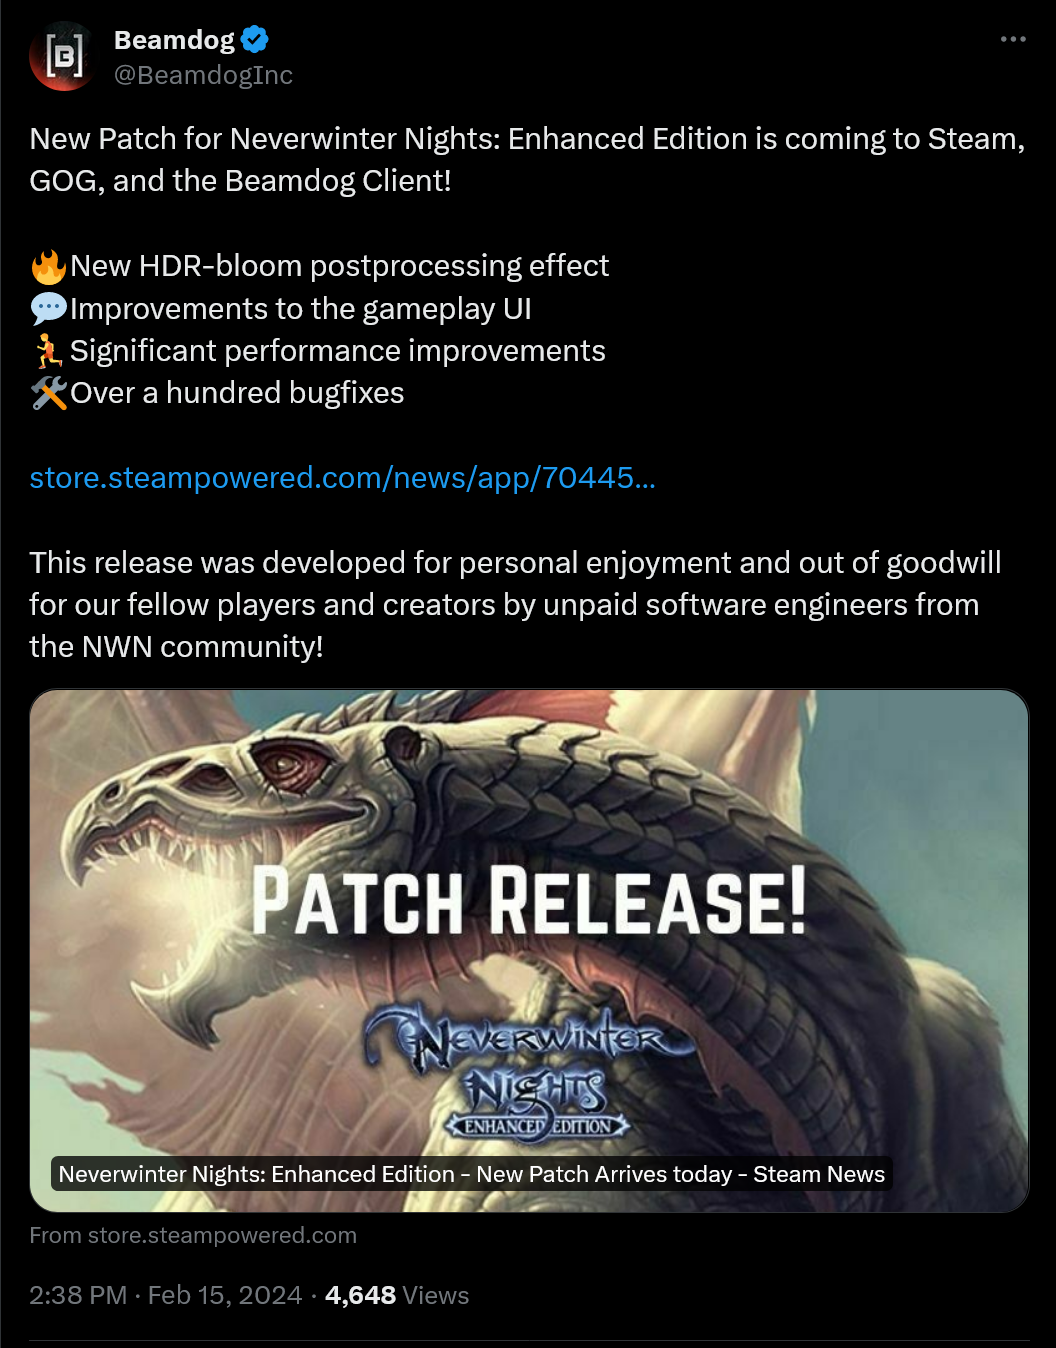 Un nouveau patch pour Neverwinter Nights : Enhanced Edition arrive sur Steam, GOG et le client Beamdog !  🔥Nouvel effet de post-traitement HDR-bloom 💬Améliorations de l'interface utilisateur du gameplay 🏃Améliorations significatives des performances 🛠️Plus d'une centaine de corrections de bugs https://store.steampowered.com/news/app/704450/view/7597079377547967509